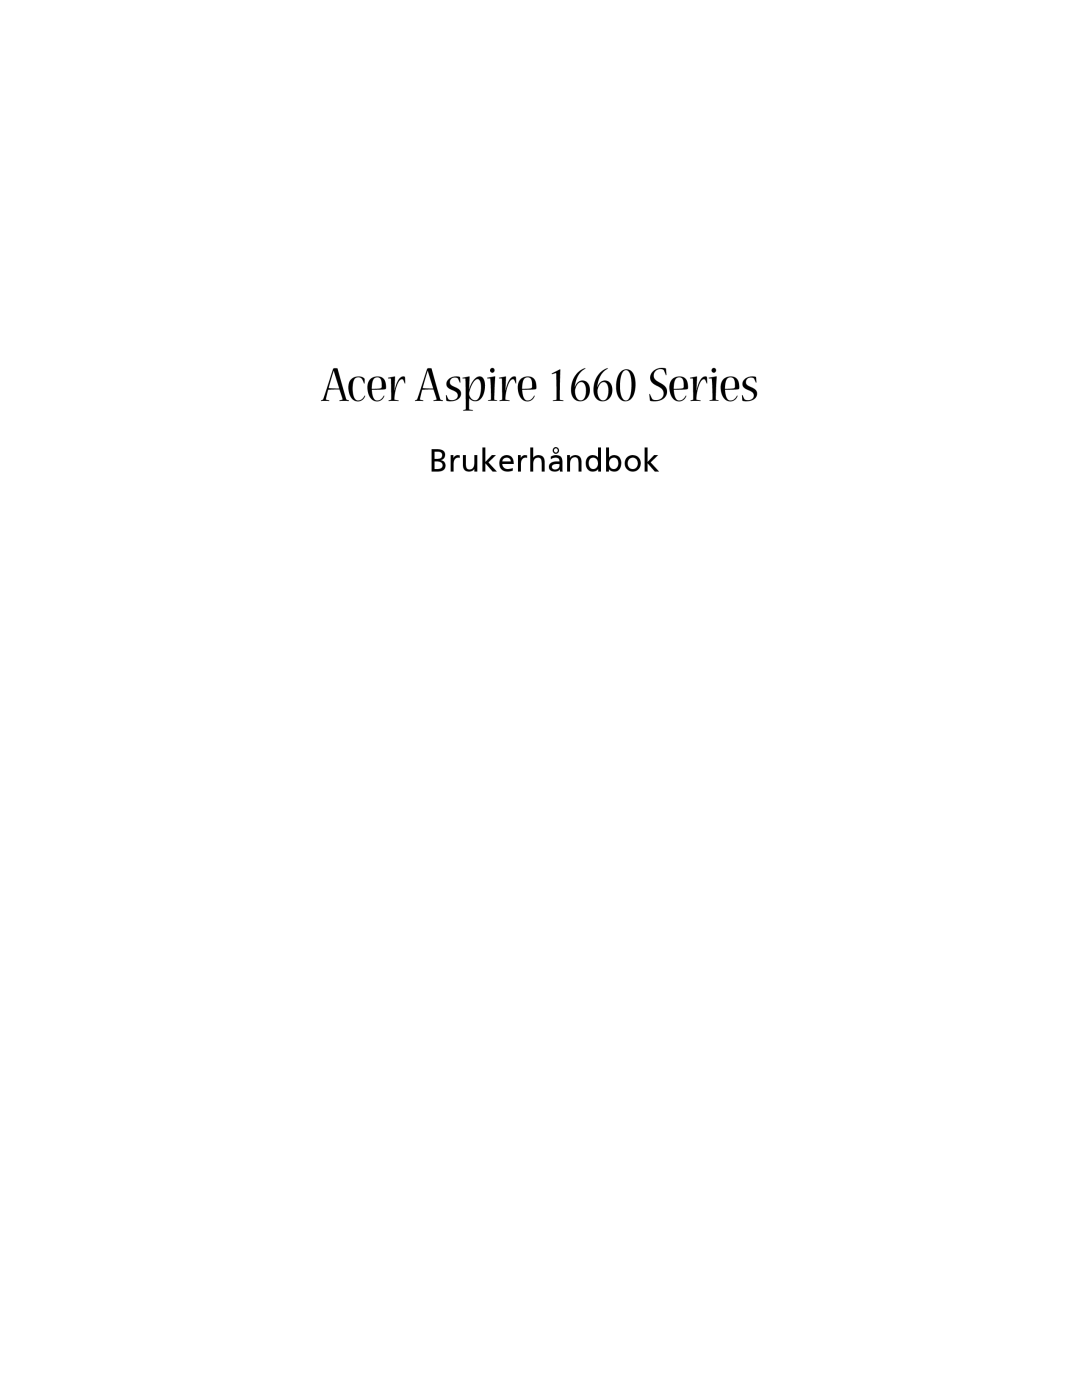 Acer manual Acer Aspire 1660 Series, Brukerhåndbok 